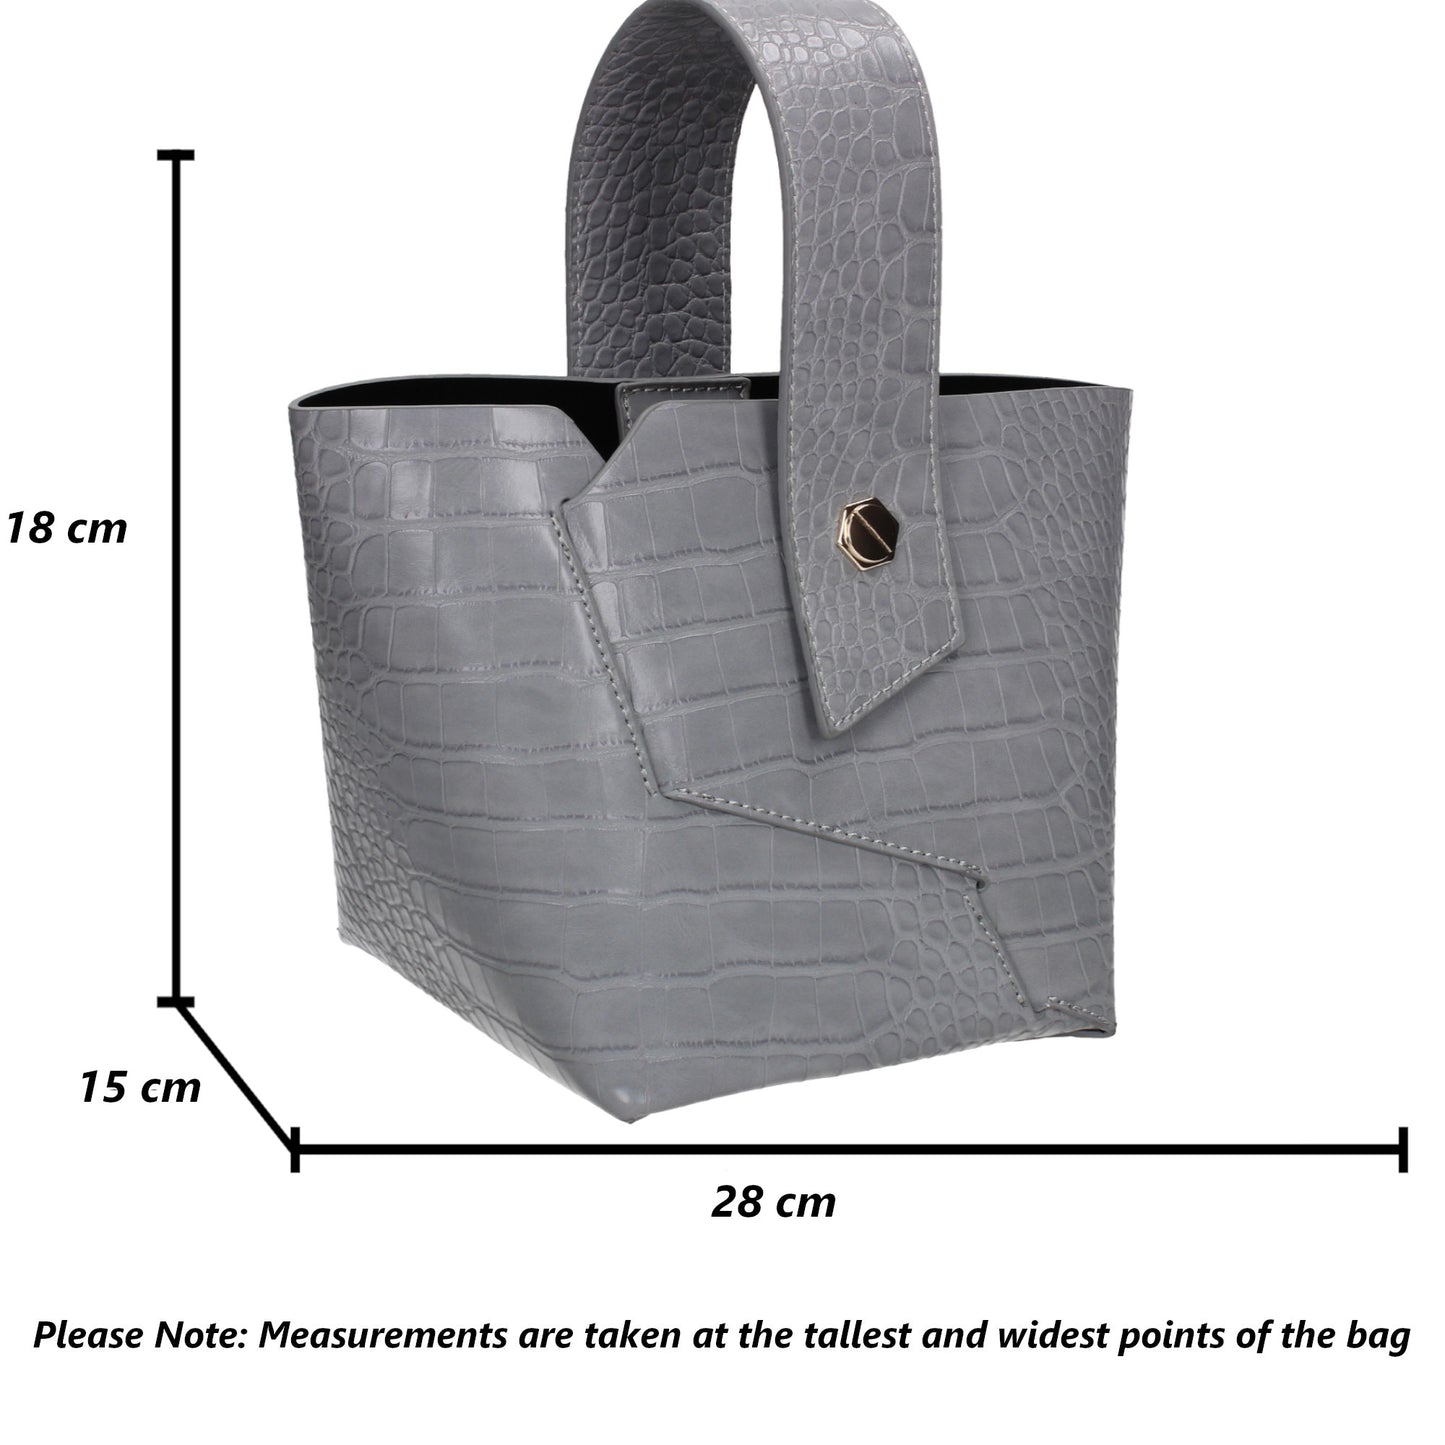 Jen Faux Leather Croc Bucket Structure Bag Grey